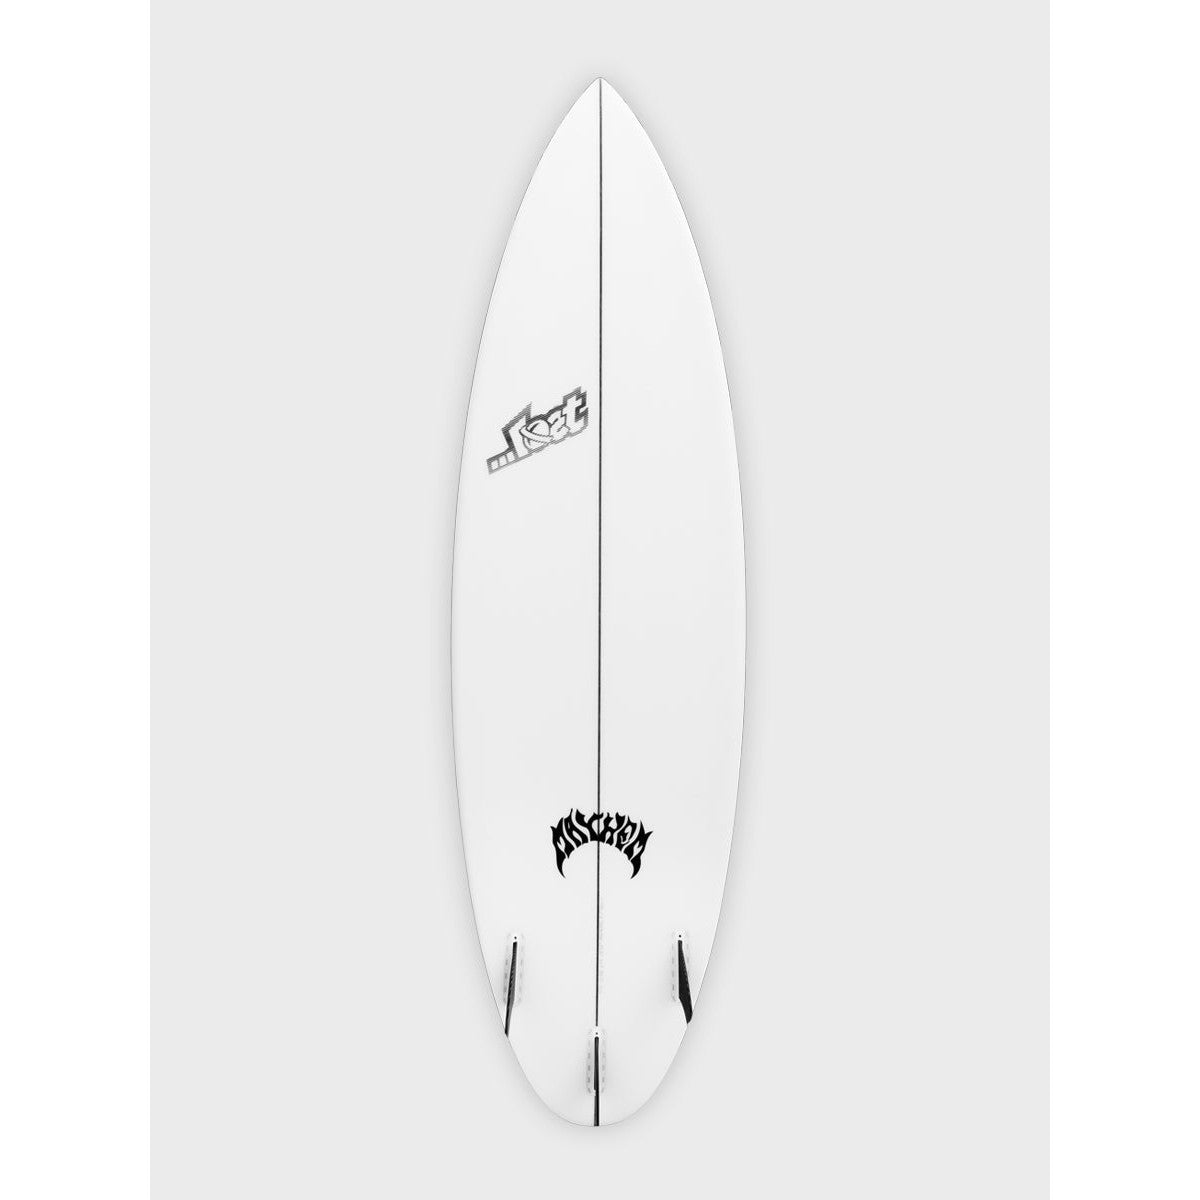 lost_surfboards-driver-3.0_round-bottom-futures-galway-ireland-blacksheepsurfco